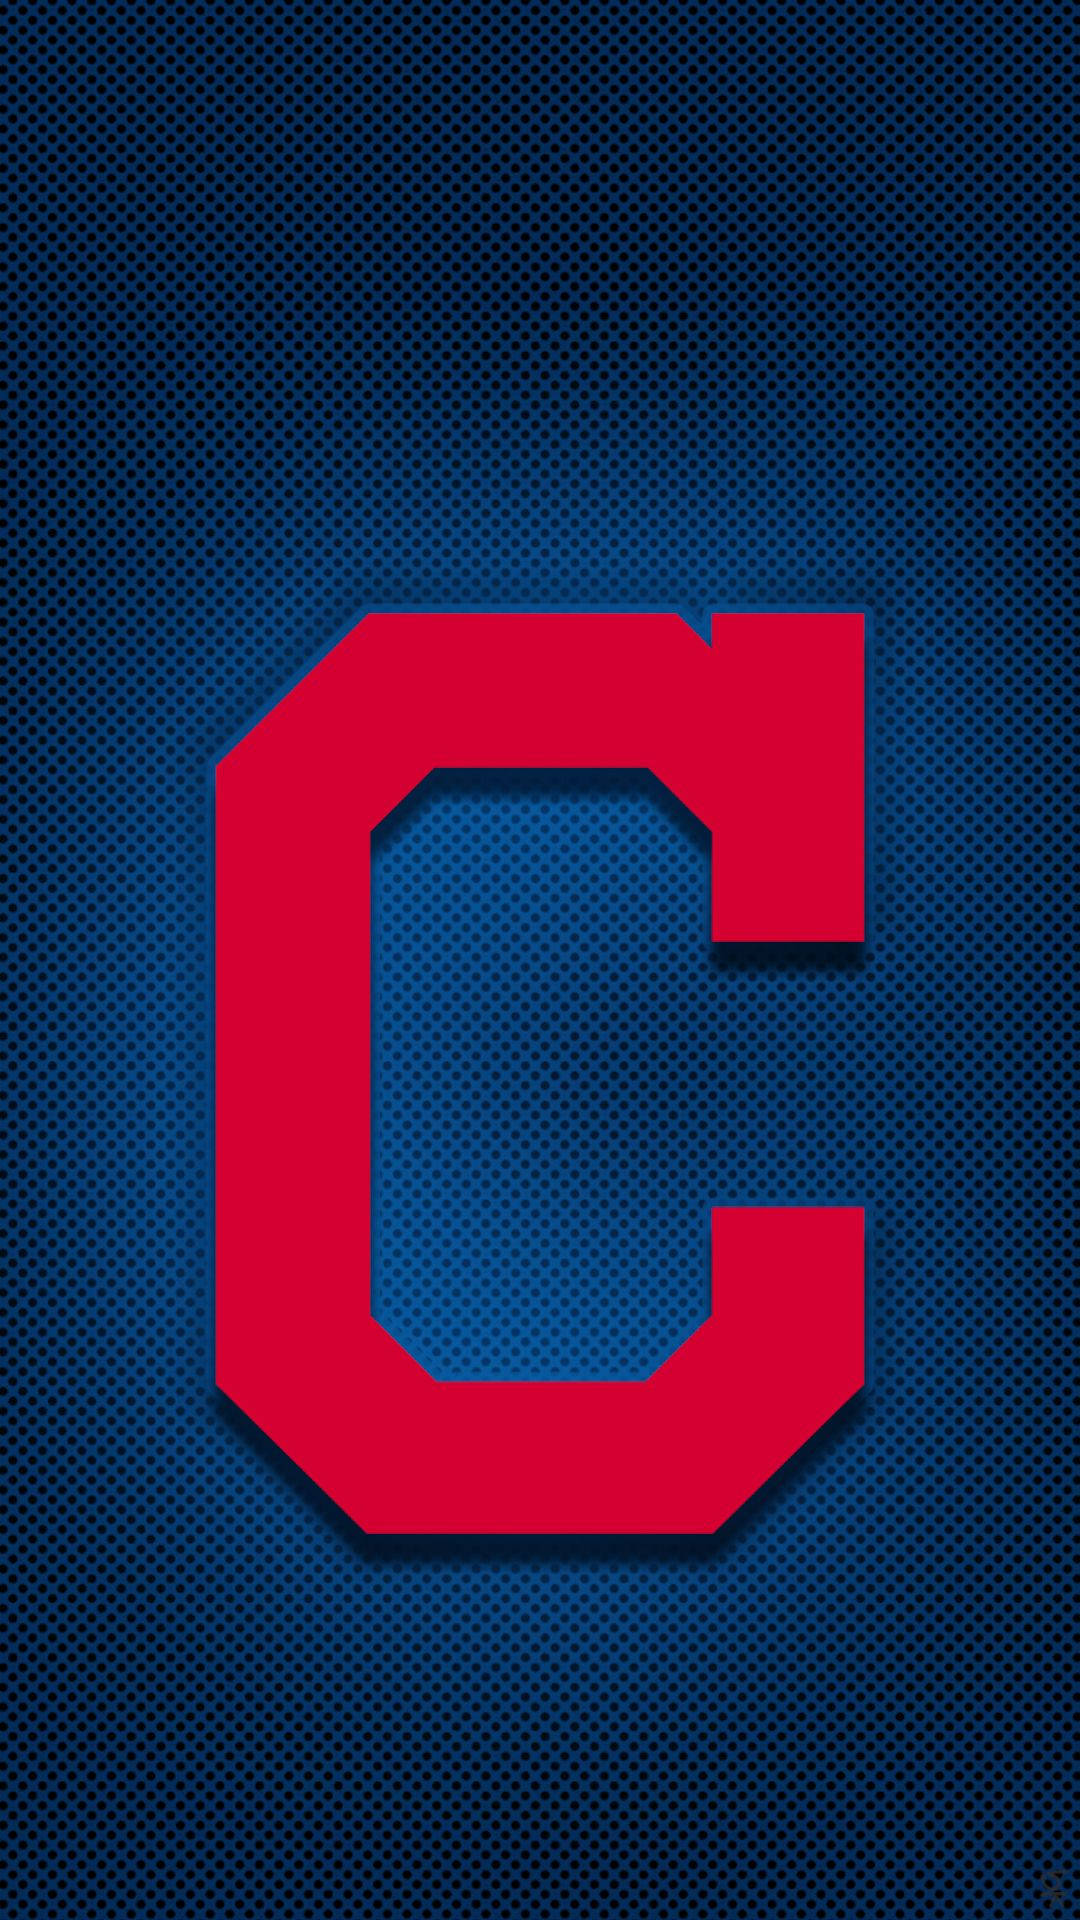 Cleveland Indians Block C Logo Background